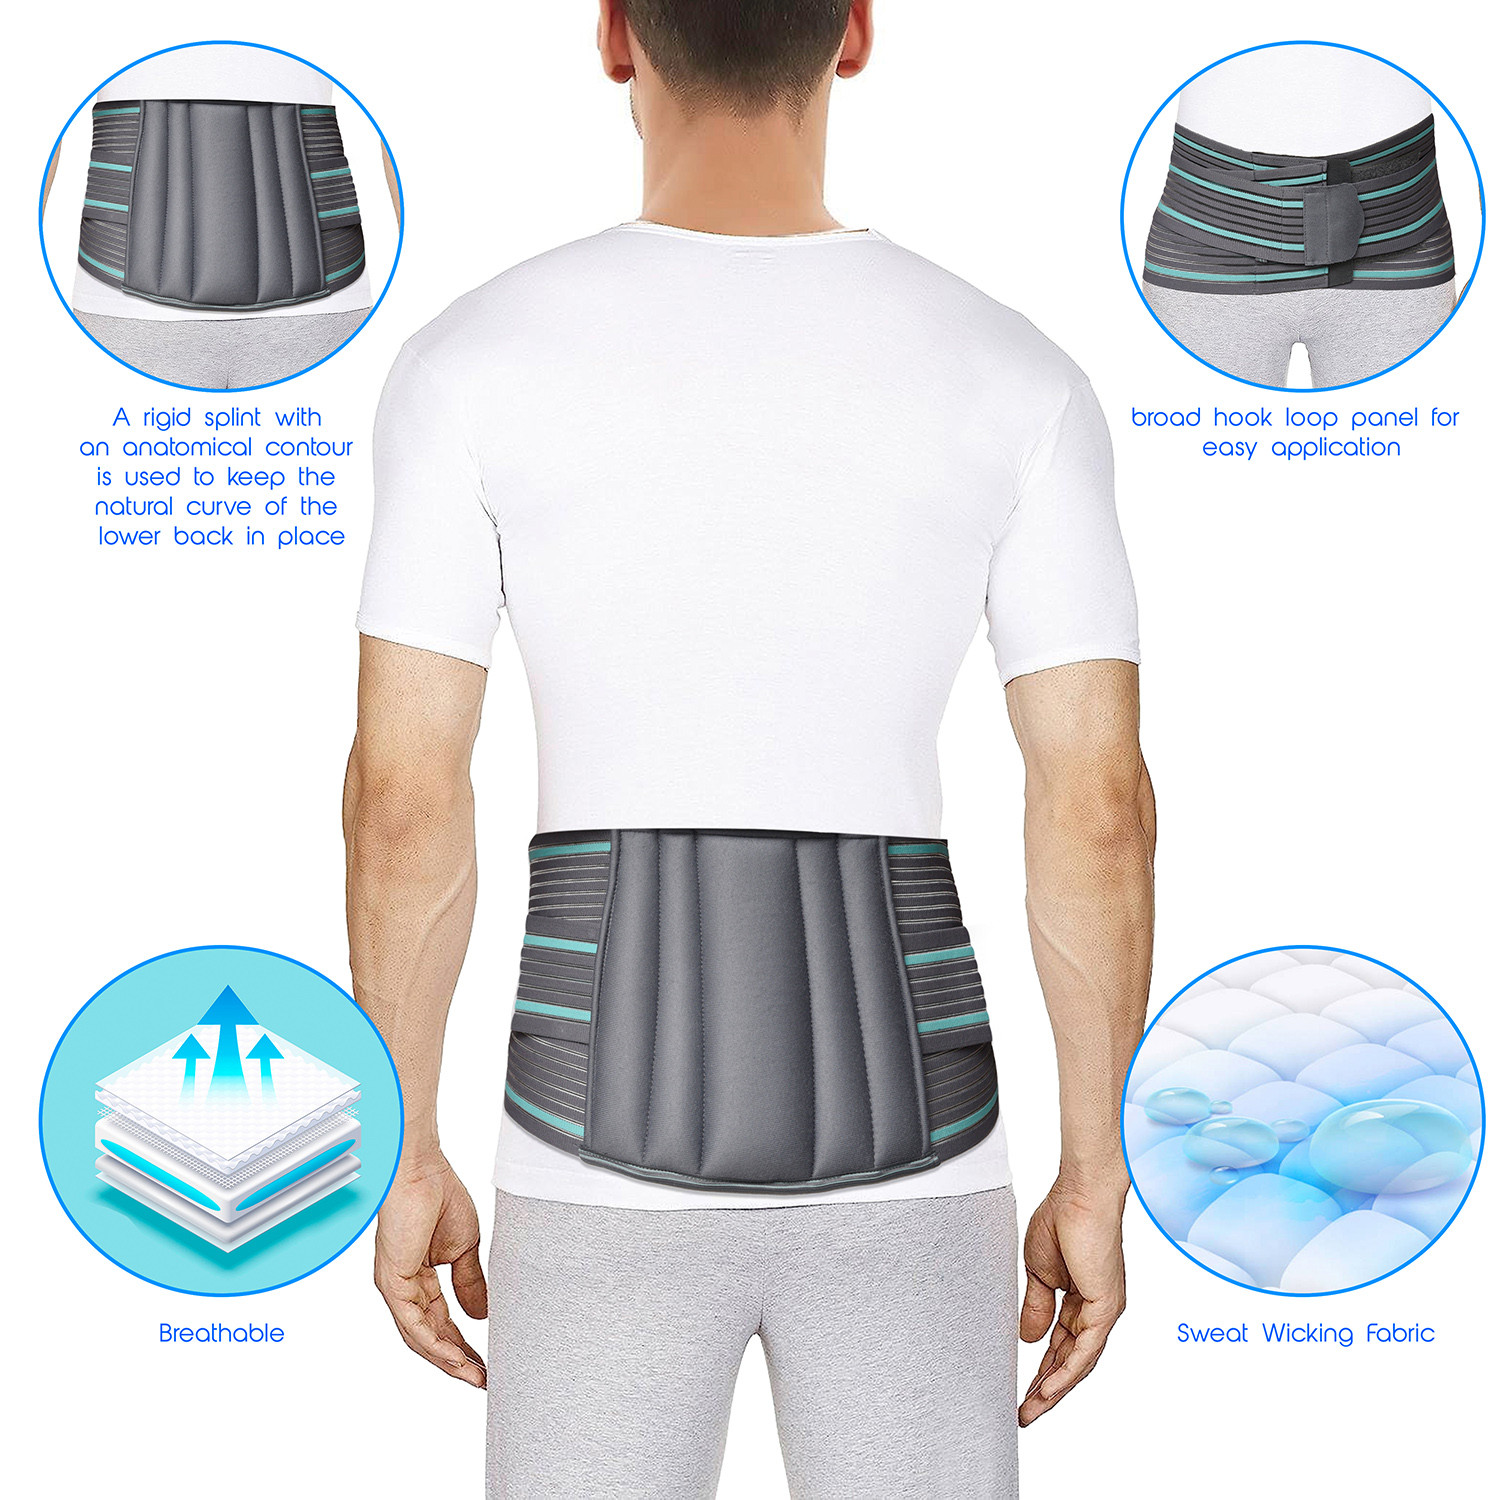 Kuber Industries Lumbar Sacral Belt | Spondylitis Back Pain Belt | Pregnancy Belt | Contoured Belt | Fat Reduction Belt | Lumbo Sacral Belt | Size-M | Gray